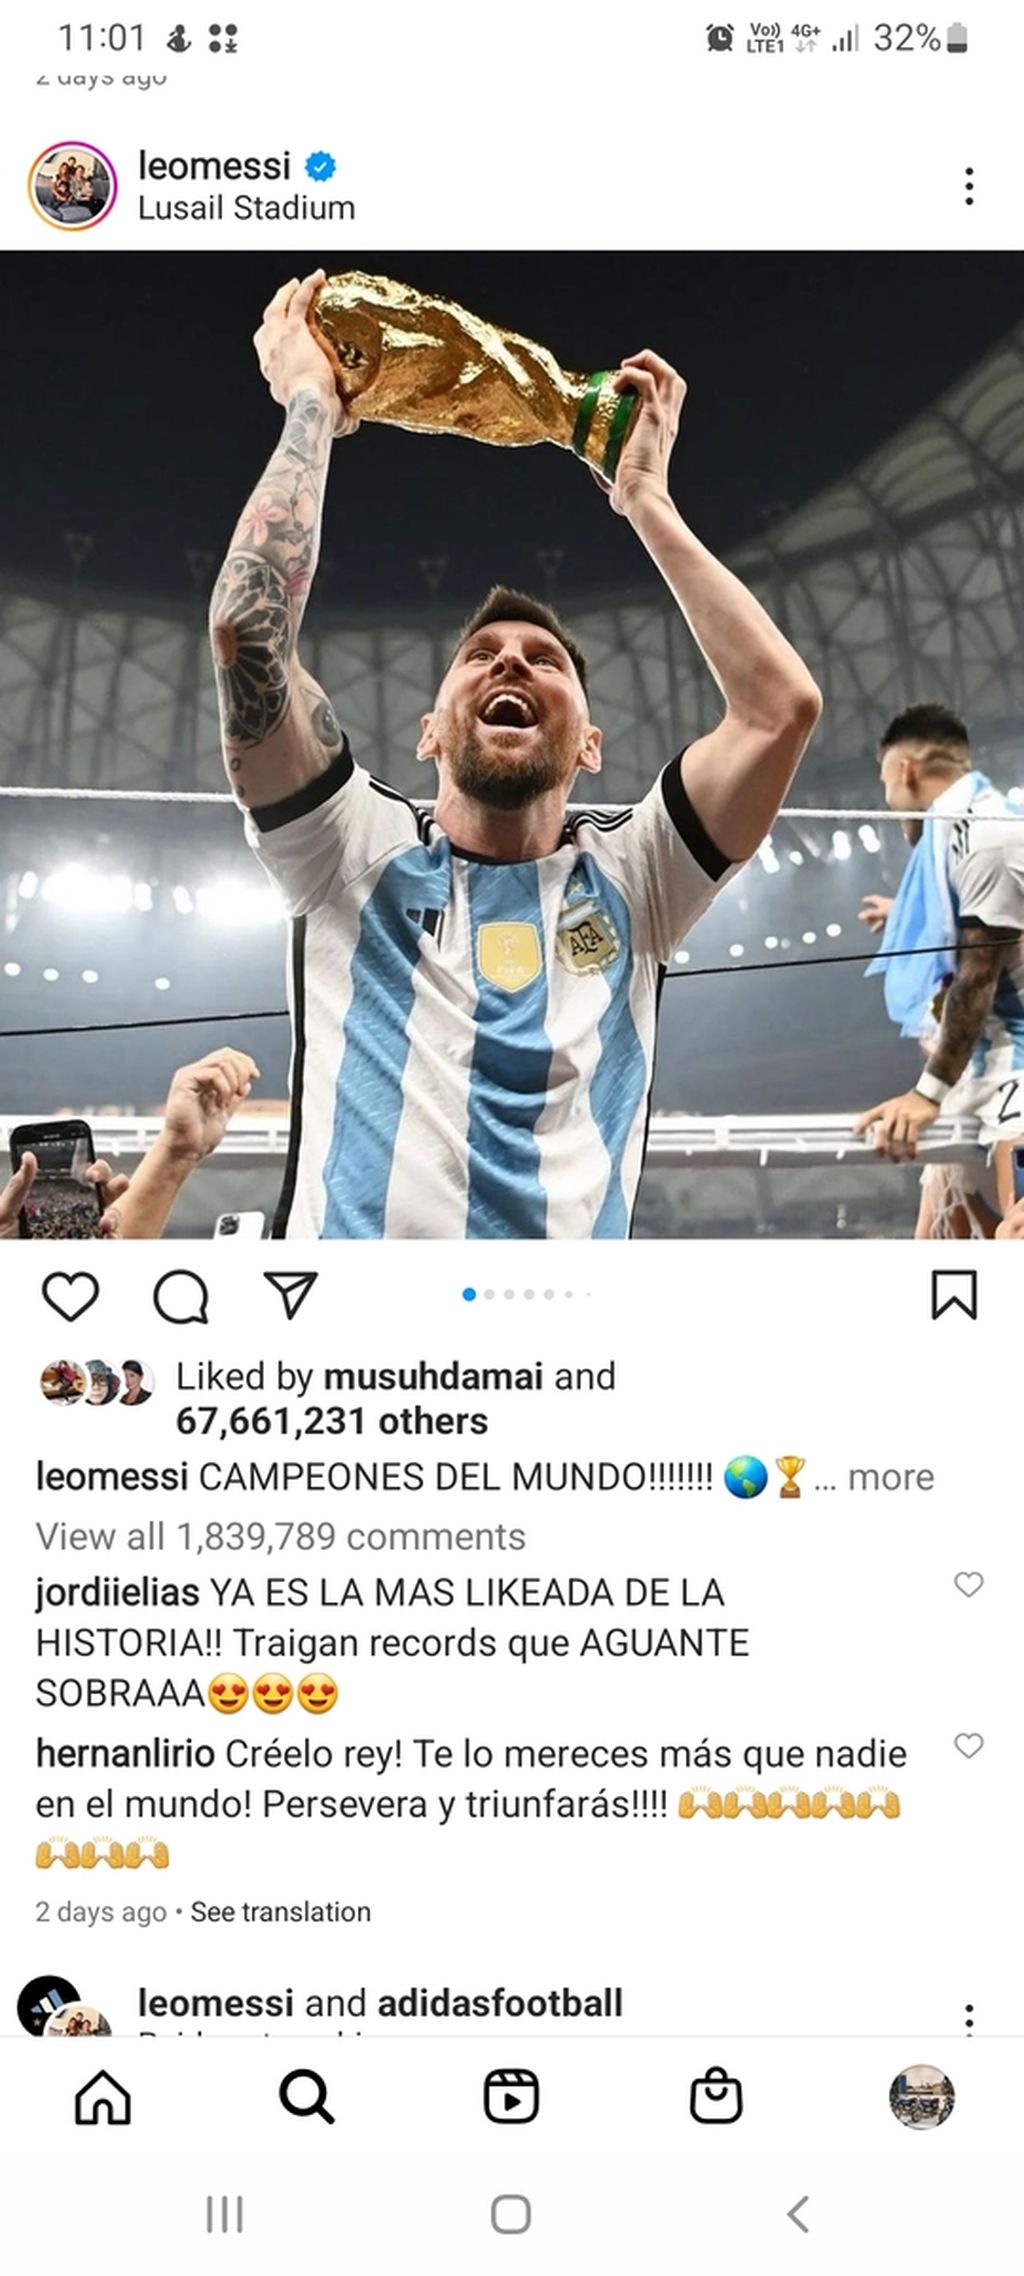 Tangkapan layar unggahan galeri foto di akun milik Lionel Messi yang memecahkan rekor karena disukai lebih dari 67 juta kali.